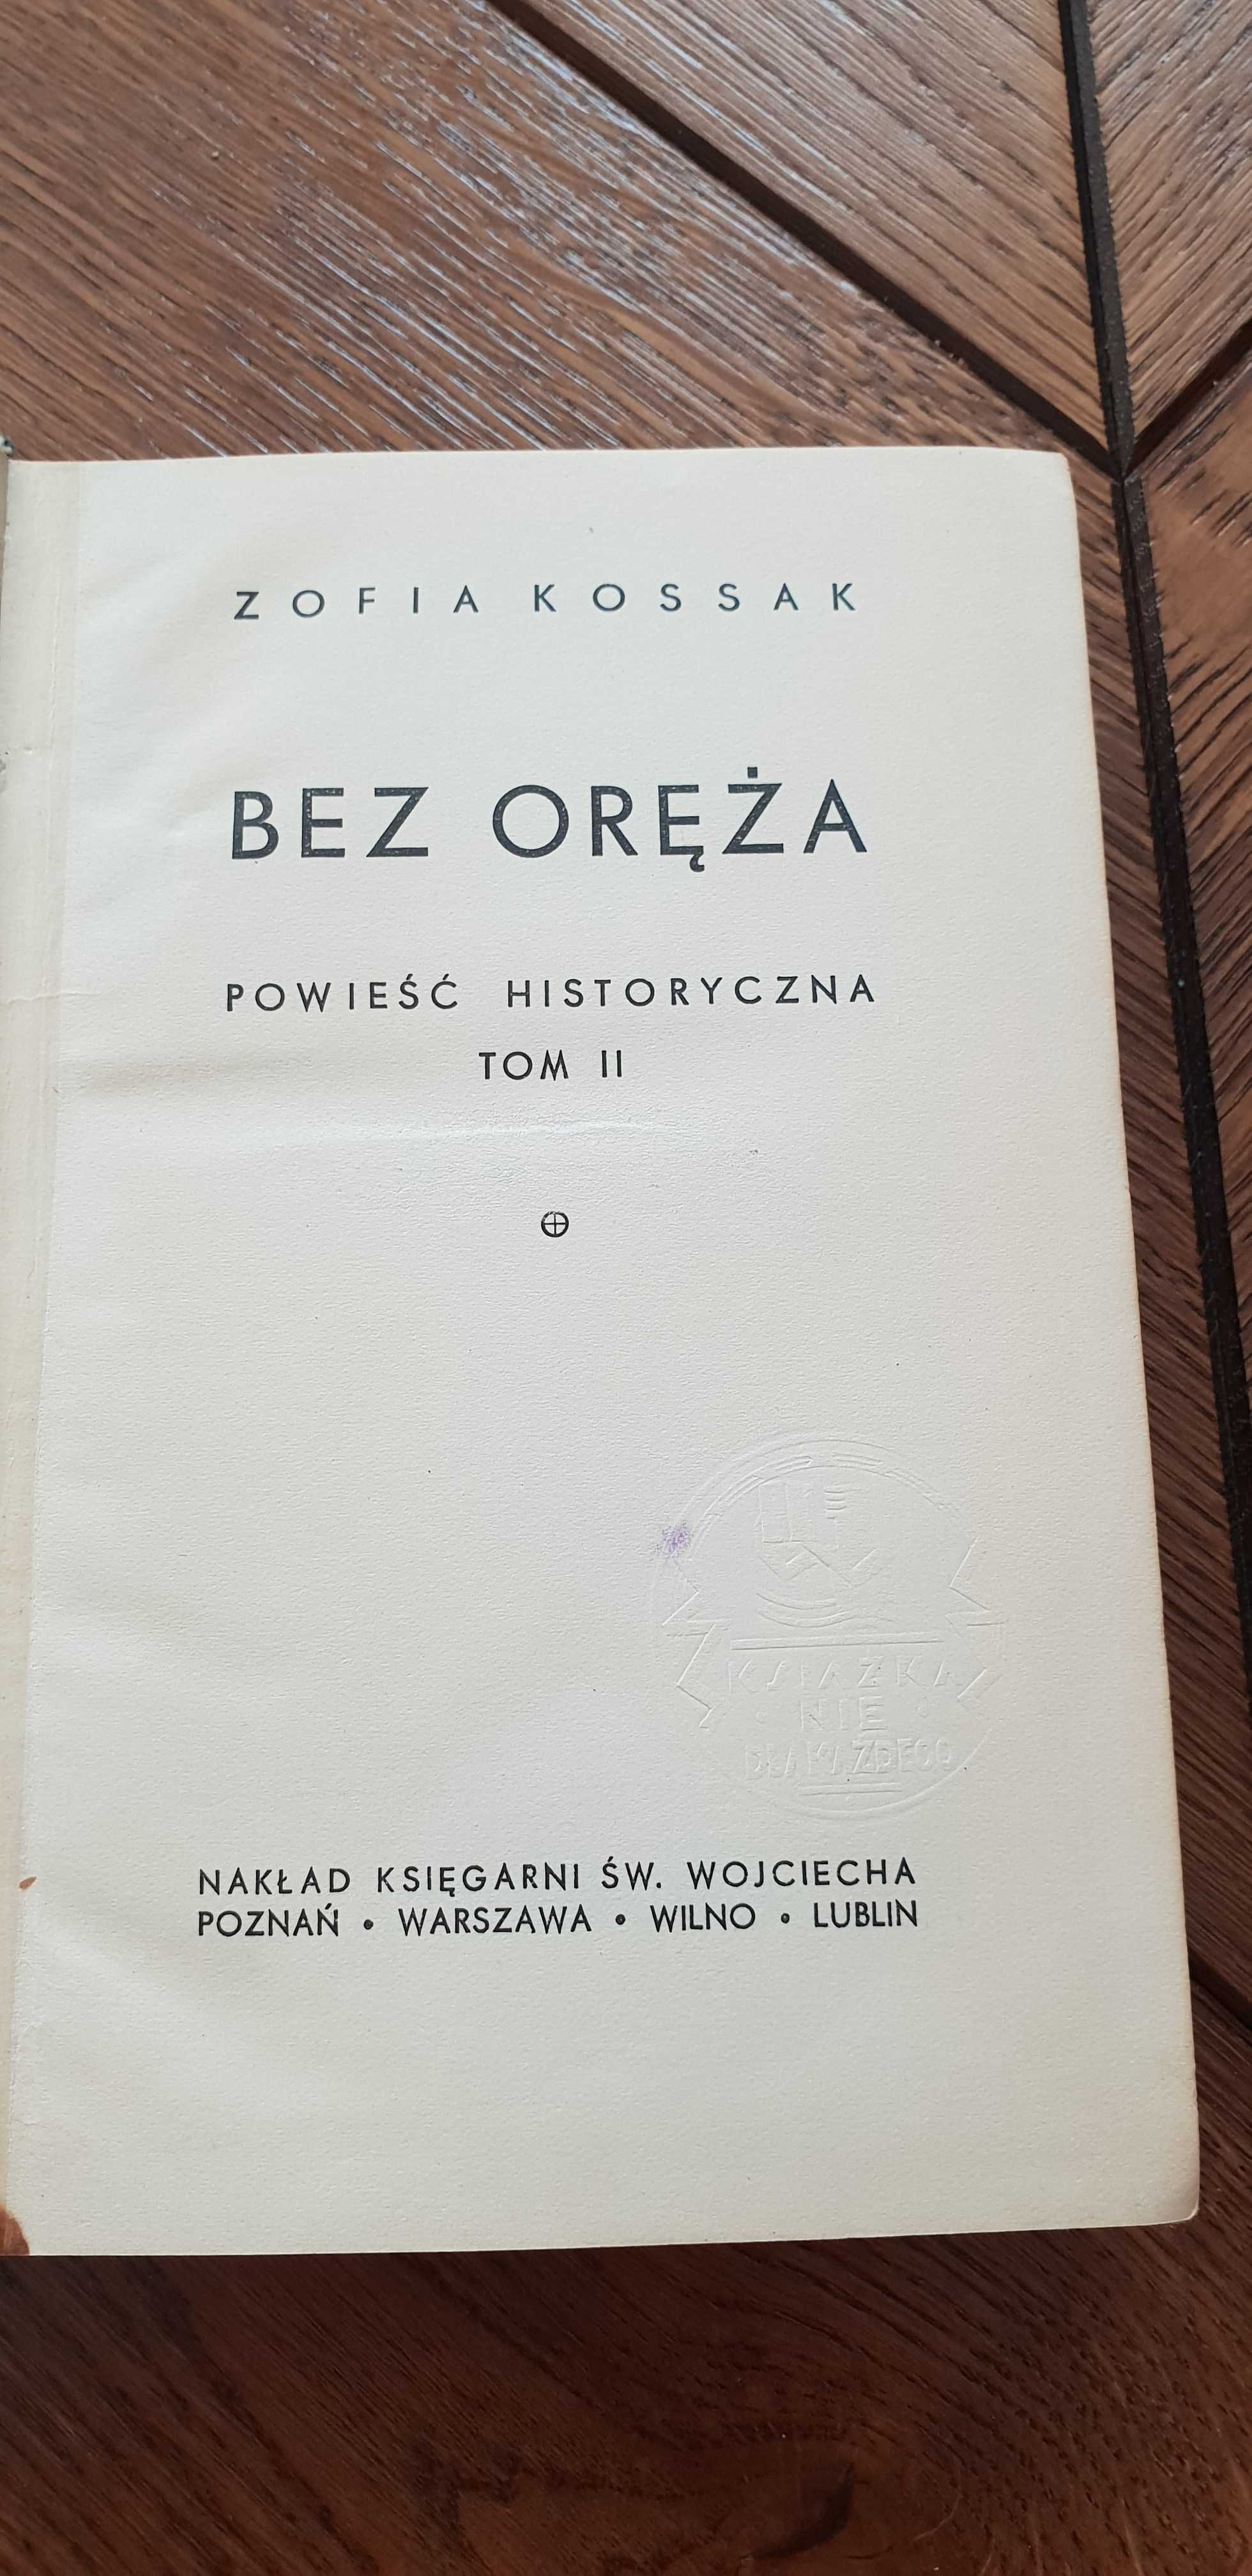 Książka rok 1937 "Bez Oręża" Zofia Kossak - tom II